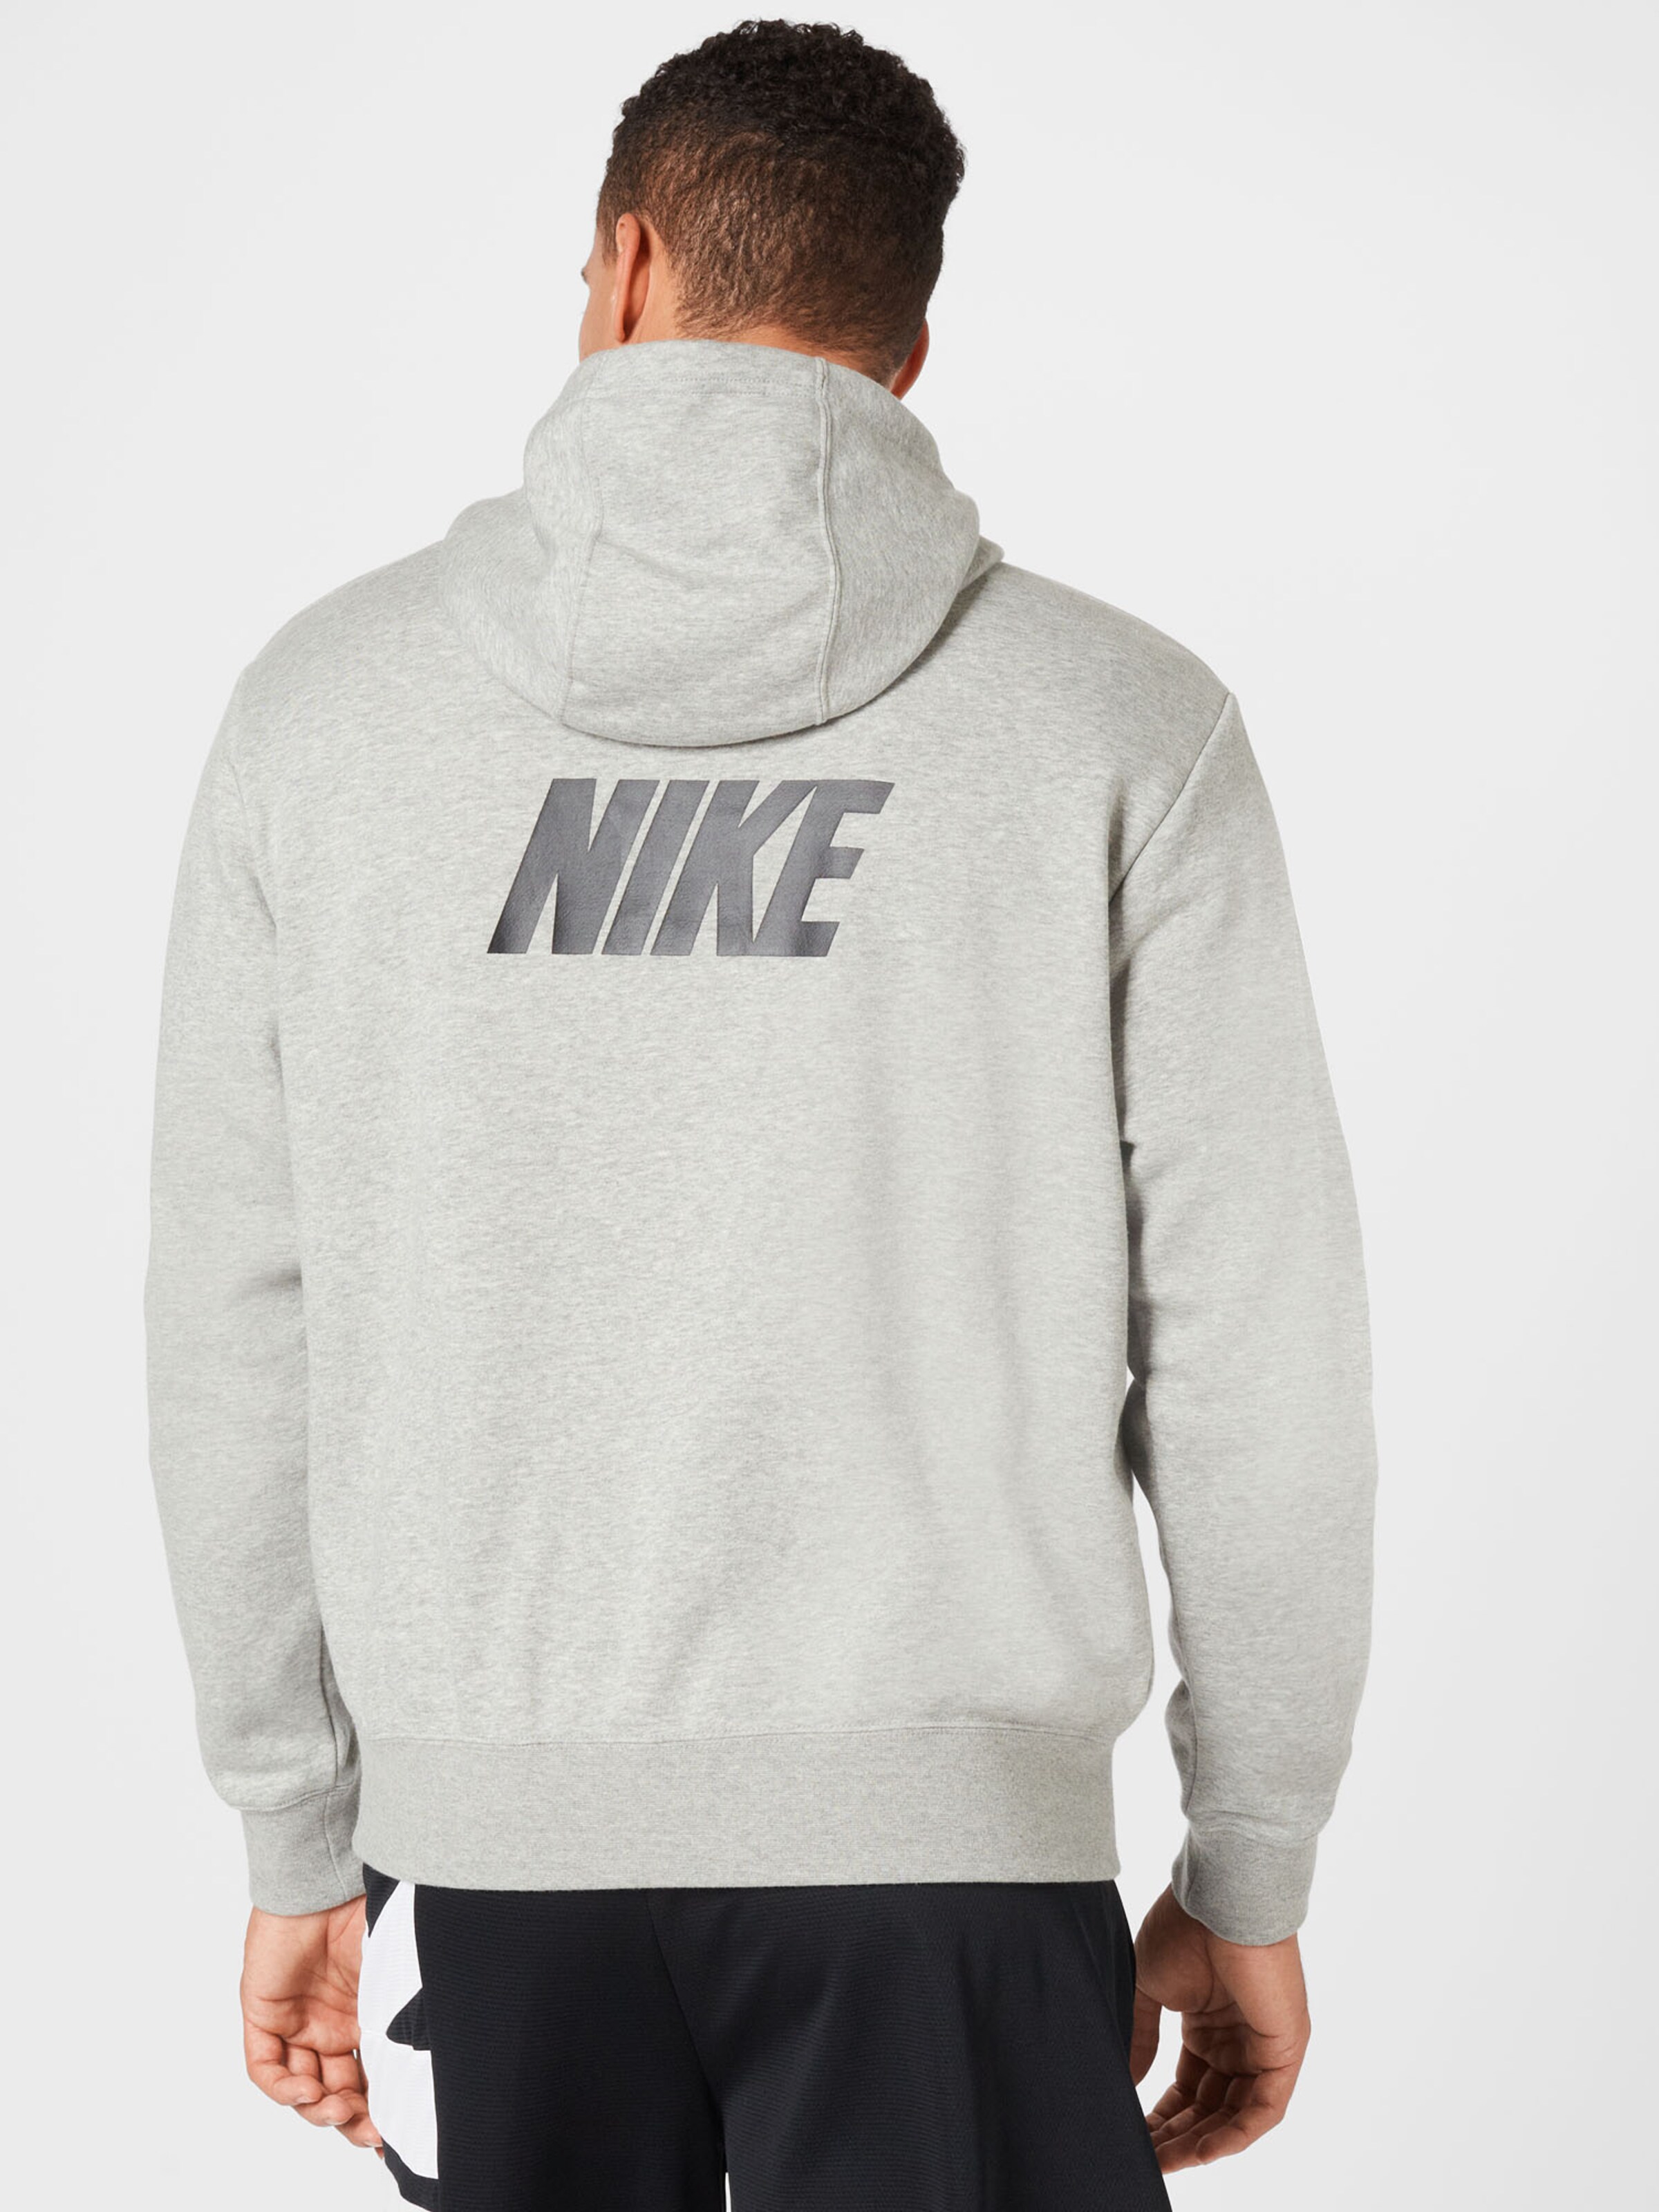 Homme Sweat-shirt Nike Sportswear en Gris Chiné 